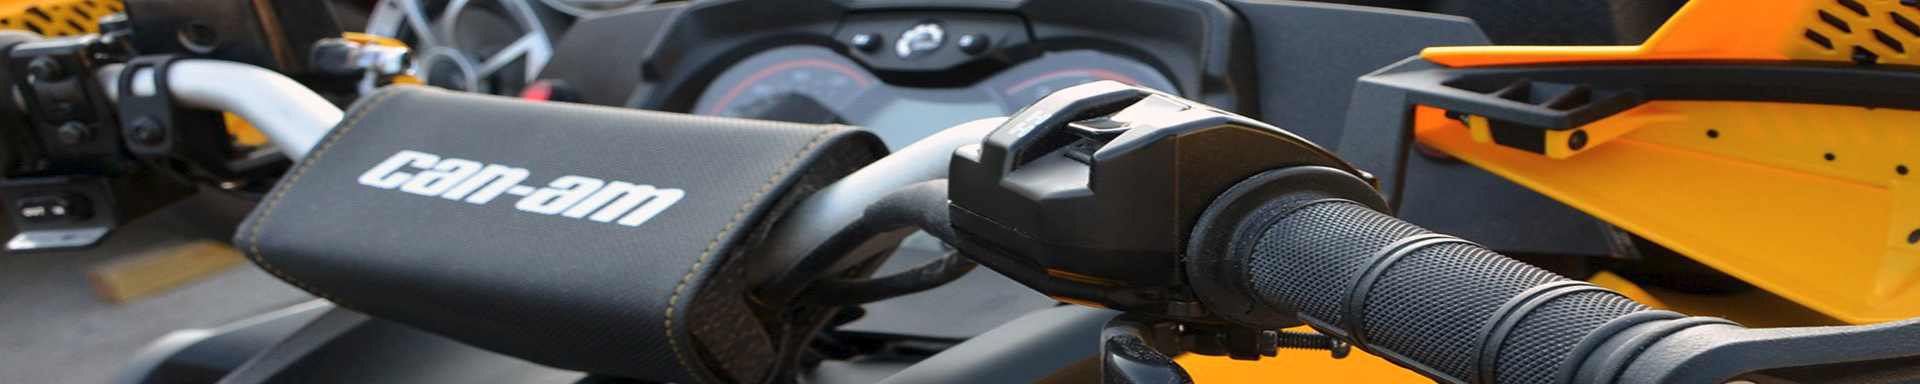 Handlebars & Steering Wheels | MunroPowersports.com | Munro Industries mp-1008030813